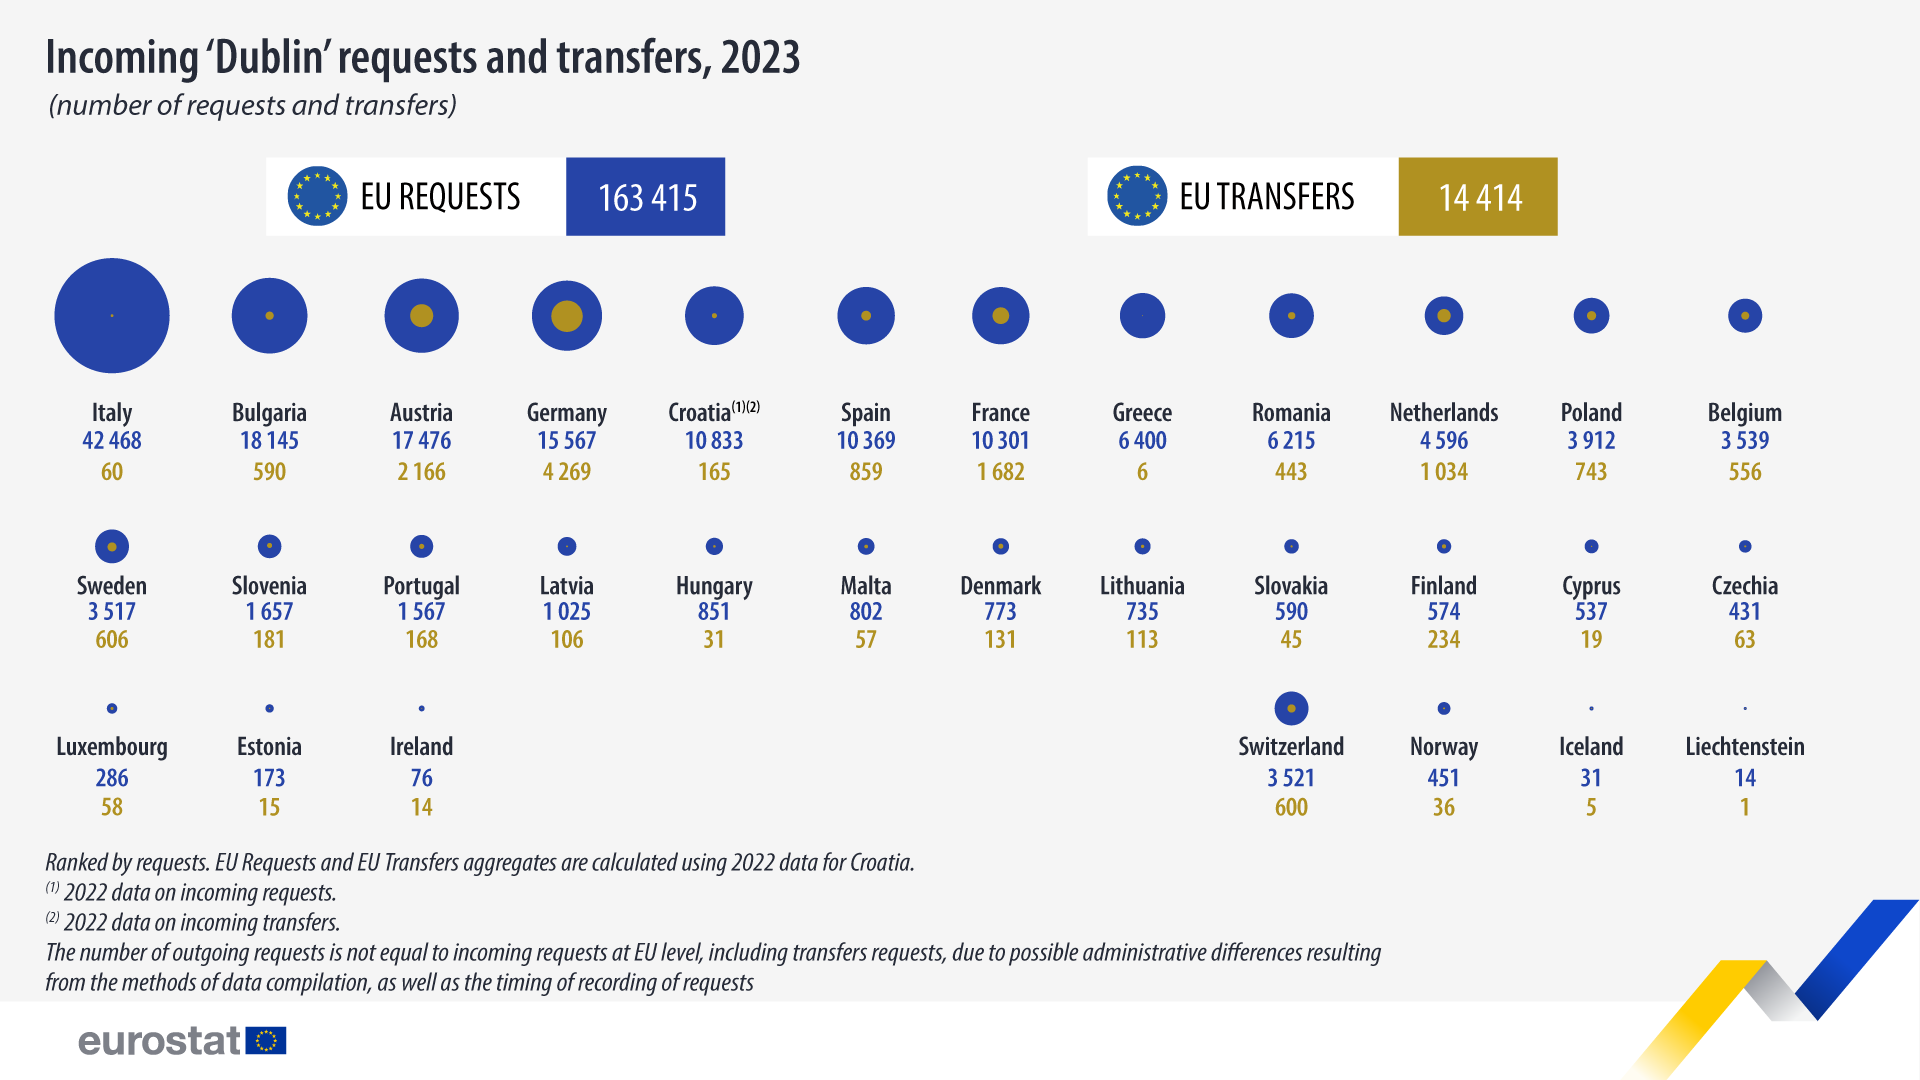 Solicitudes y transferencias entrantes “Dublín”, número de solicitudes y transferencias, 2023. Infografía.  Vea el enlace al conjunto de datos completo a continuación.